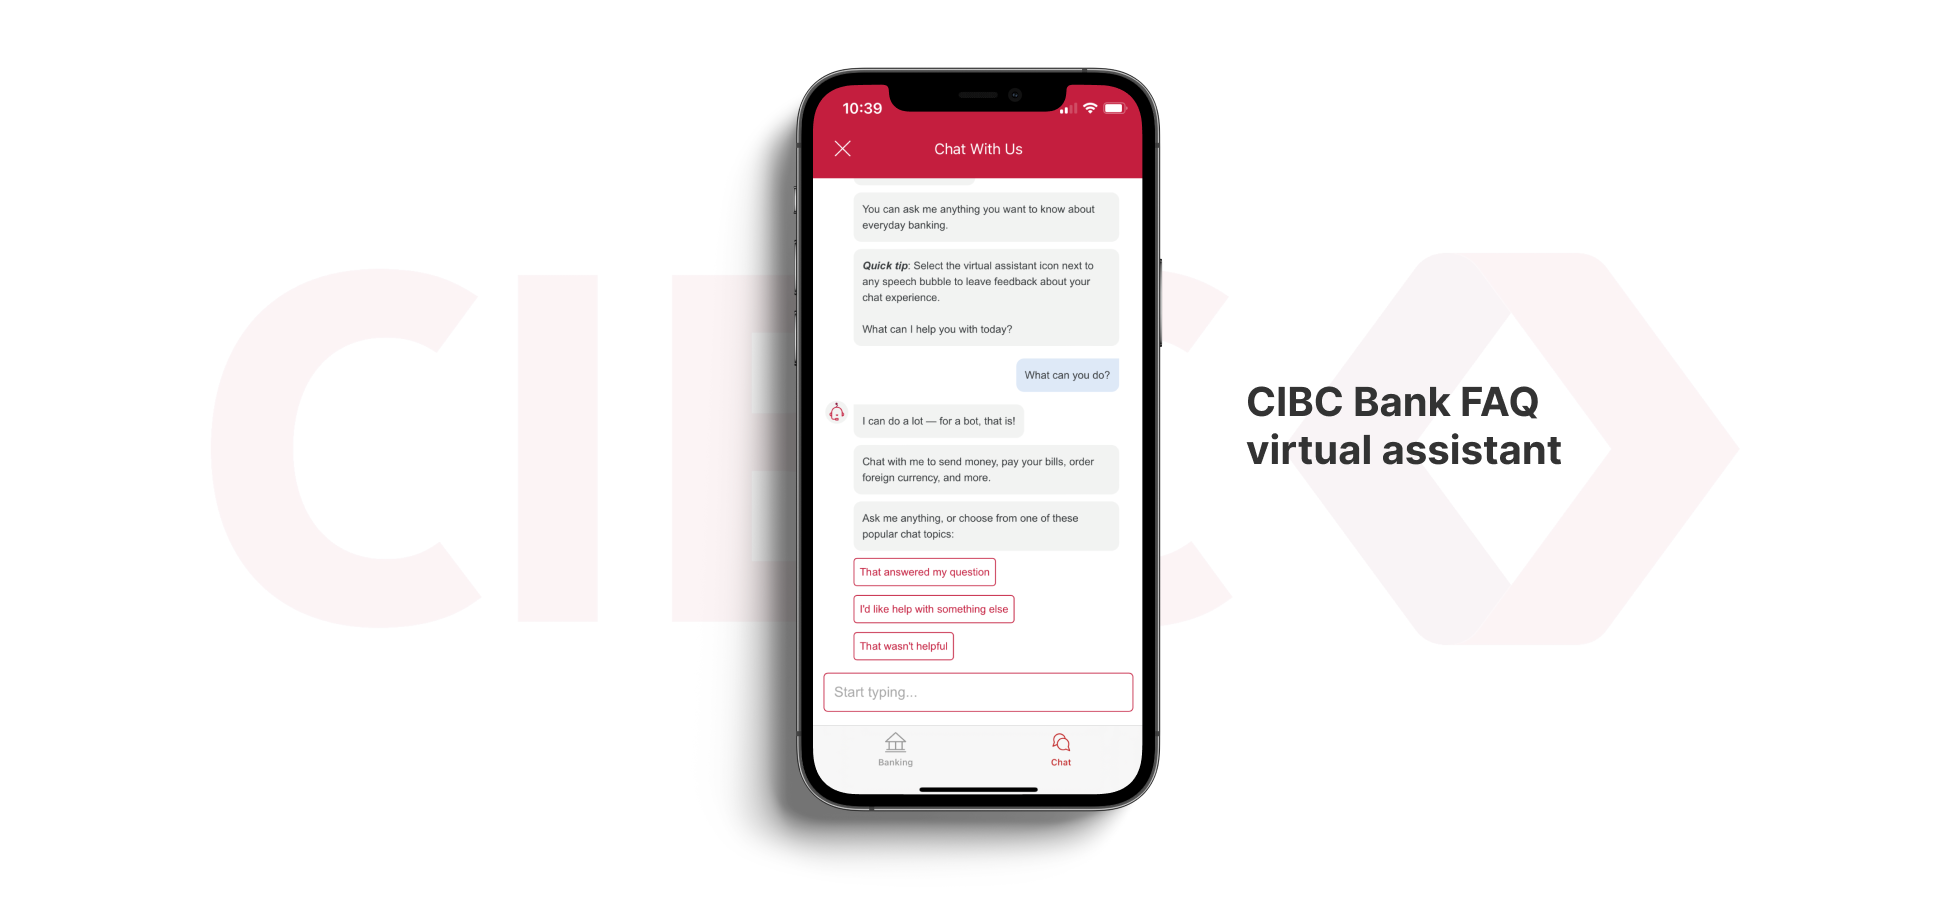 CIBC Bank FAQ Virtual Assistant